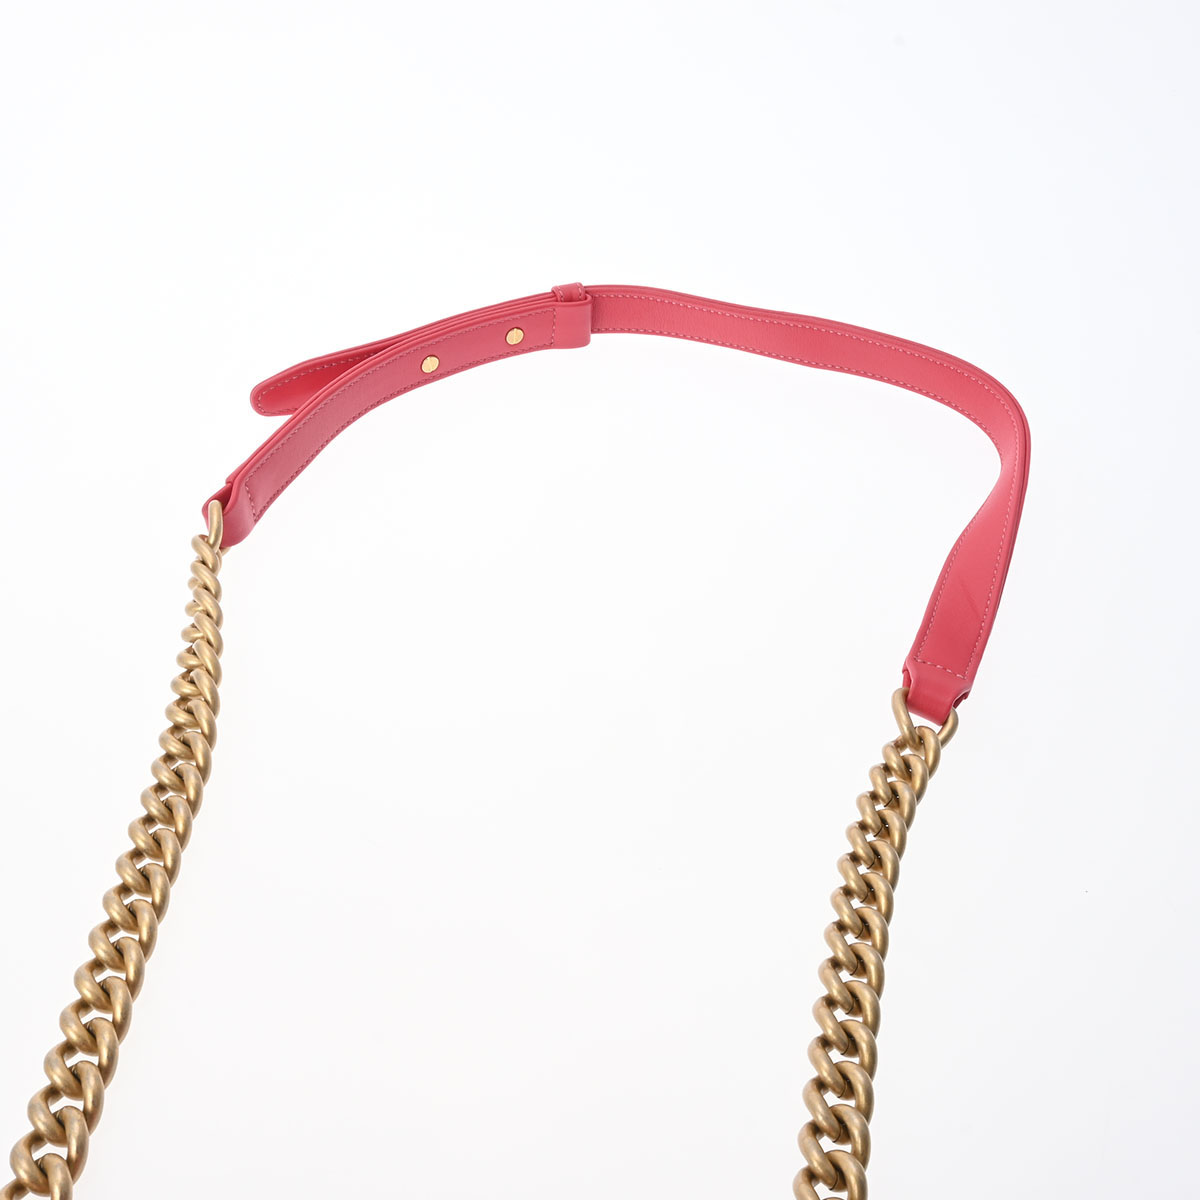 CHANEL Chanel Boy Chanel 20 цепь плечо розовый под старину Gold металлические принадлежности A67085 женский машина f сумка на плечо AB разряд б/у серебряный магазин 